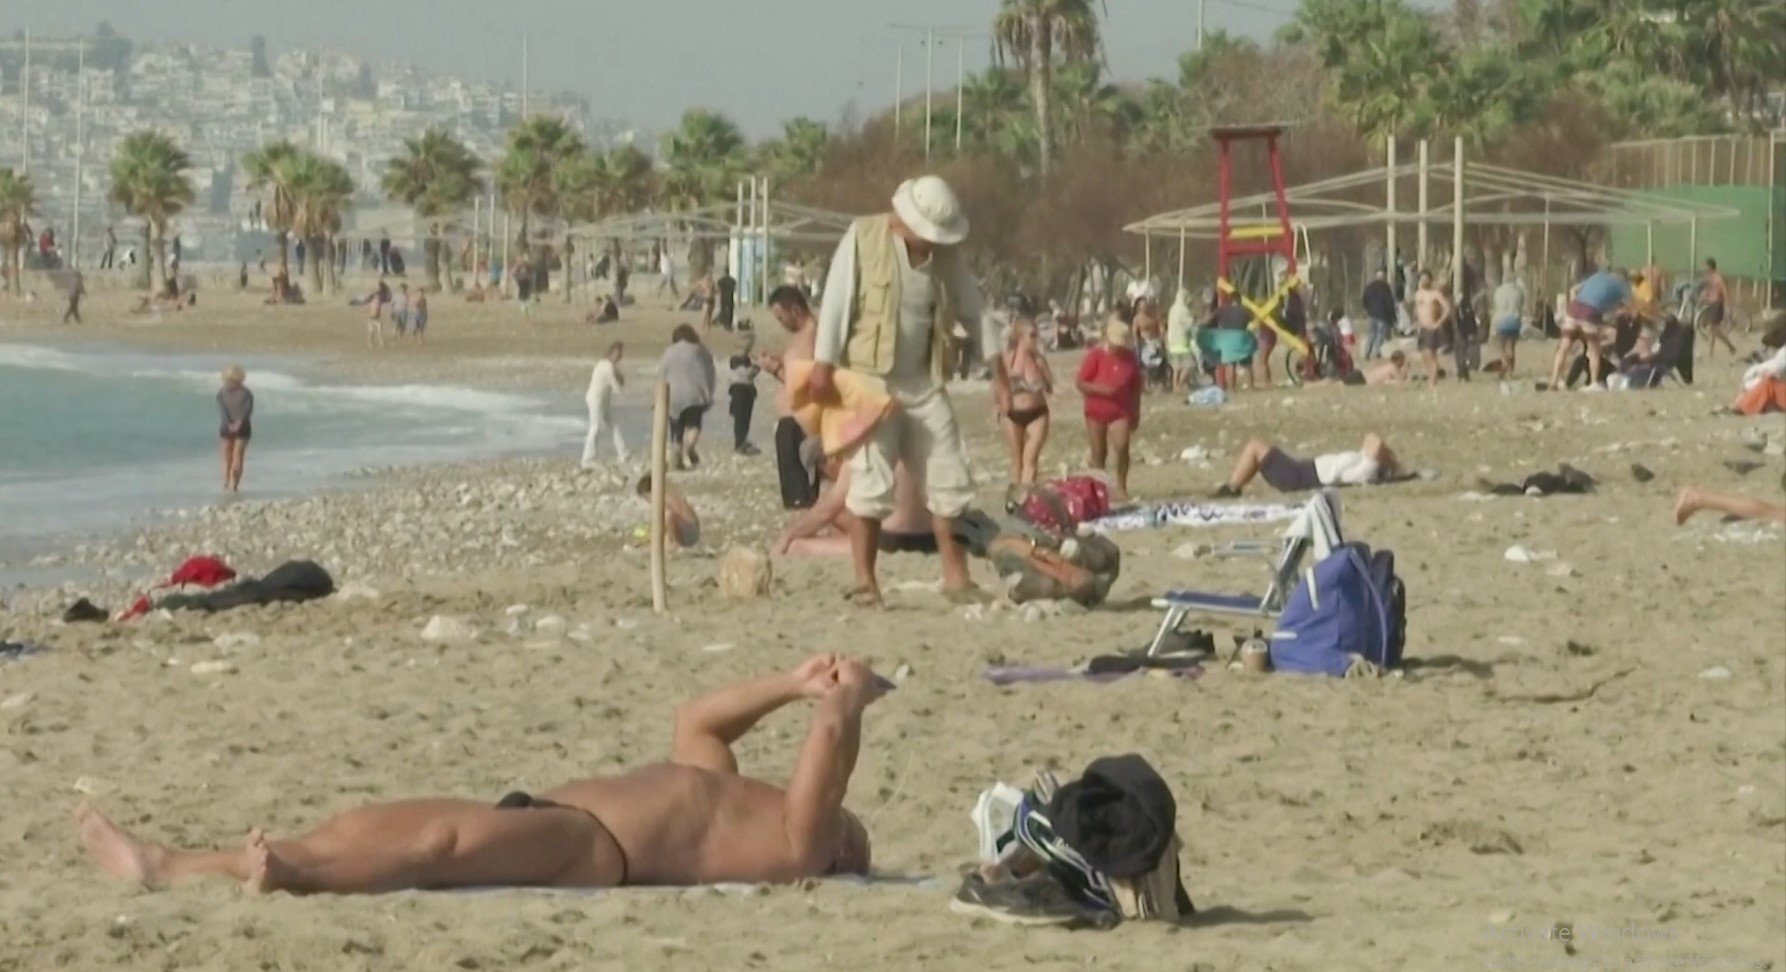  VIDEO: Temperaturi de 28 grade Celsius în Grecia: lumea a ignorat restricţiile şi a ieşit la plajă